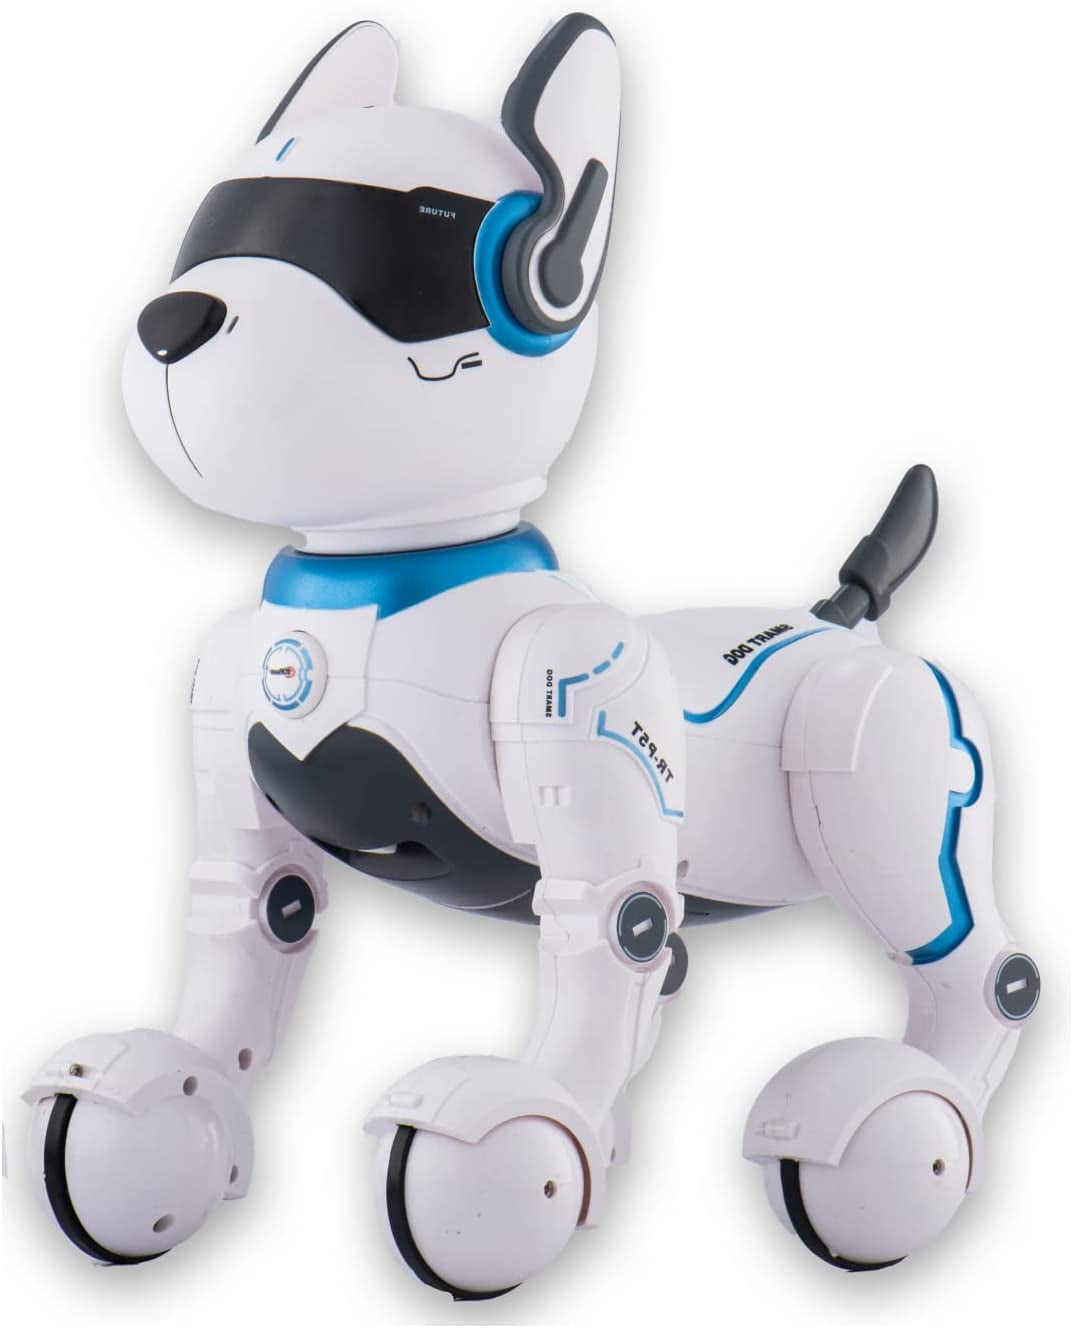 Ikke moderigtigt investering kasseapparat Dollar Deal | Remote Control Robot Dog Toy Robots For Kids Rc Dog Robot Toys  - Walmart.com